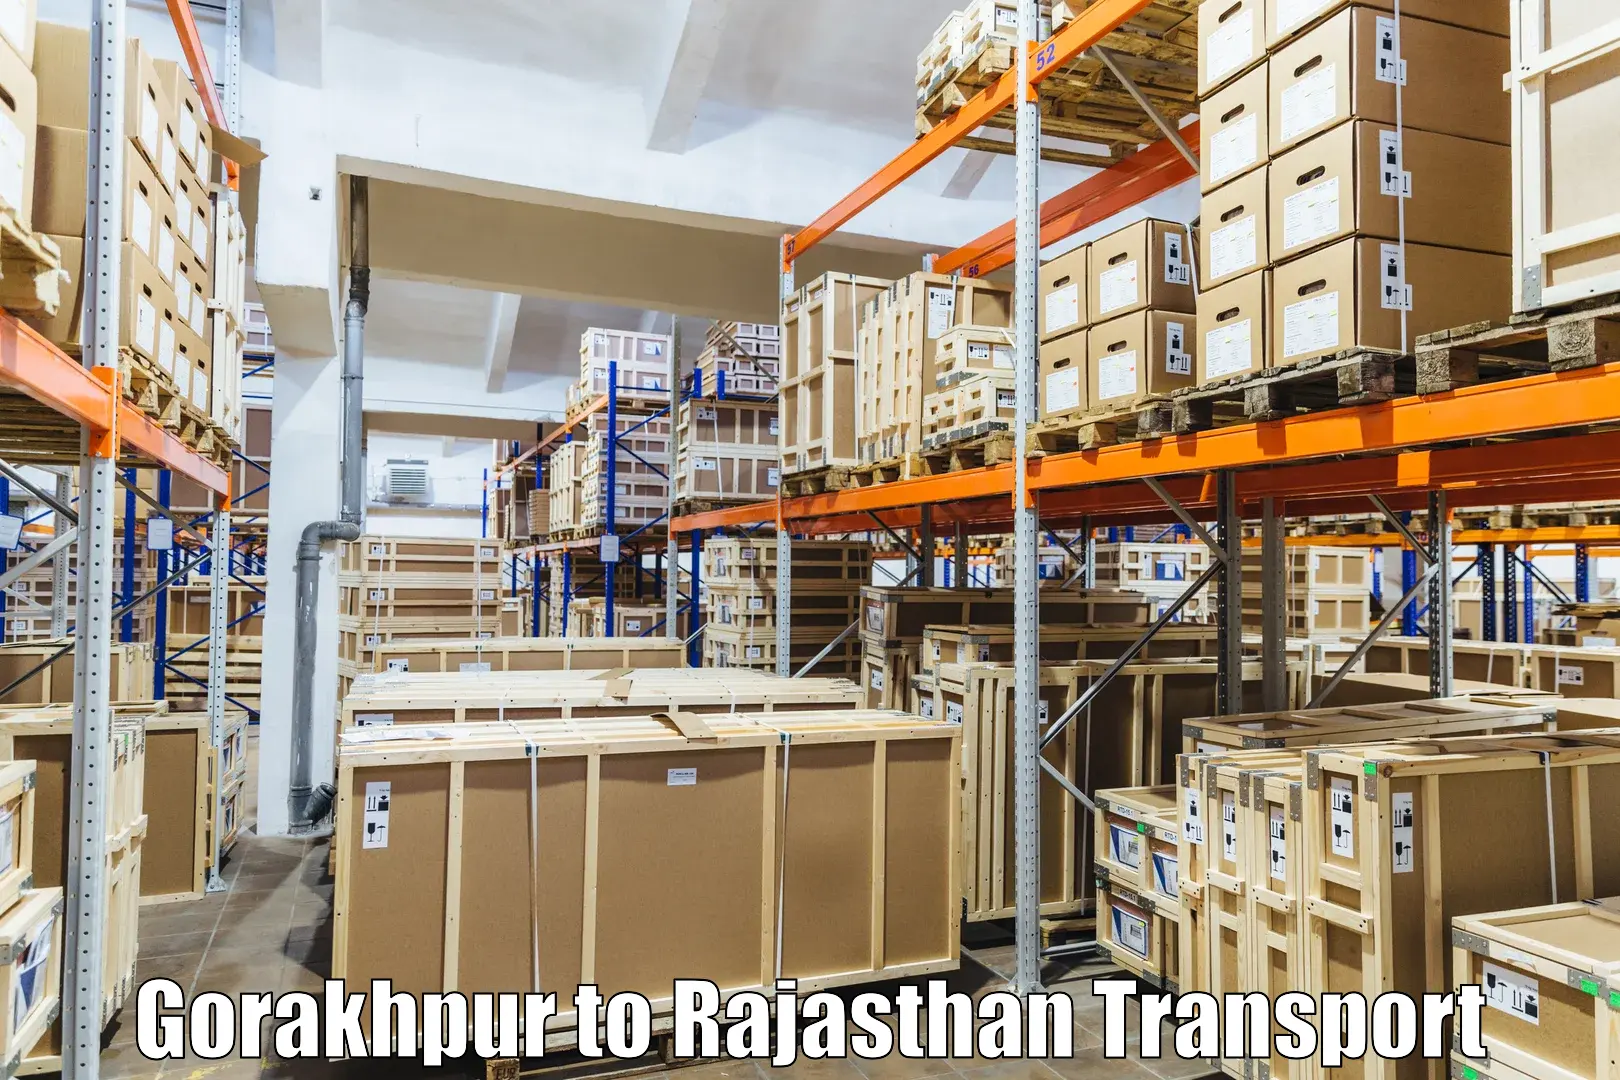 Interstate transport services in Gorakhpur to Bayana